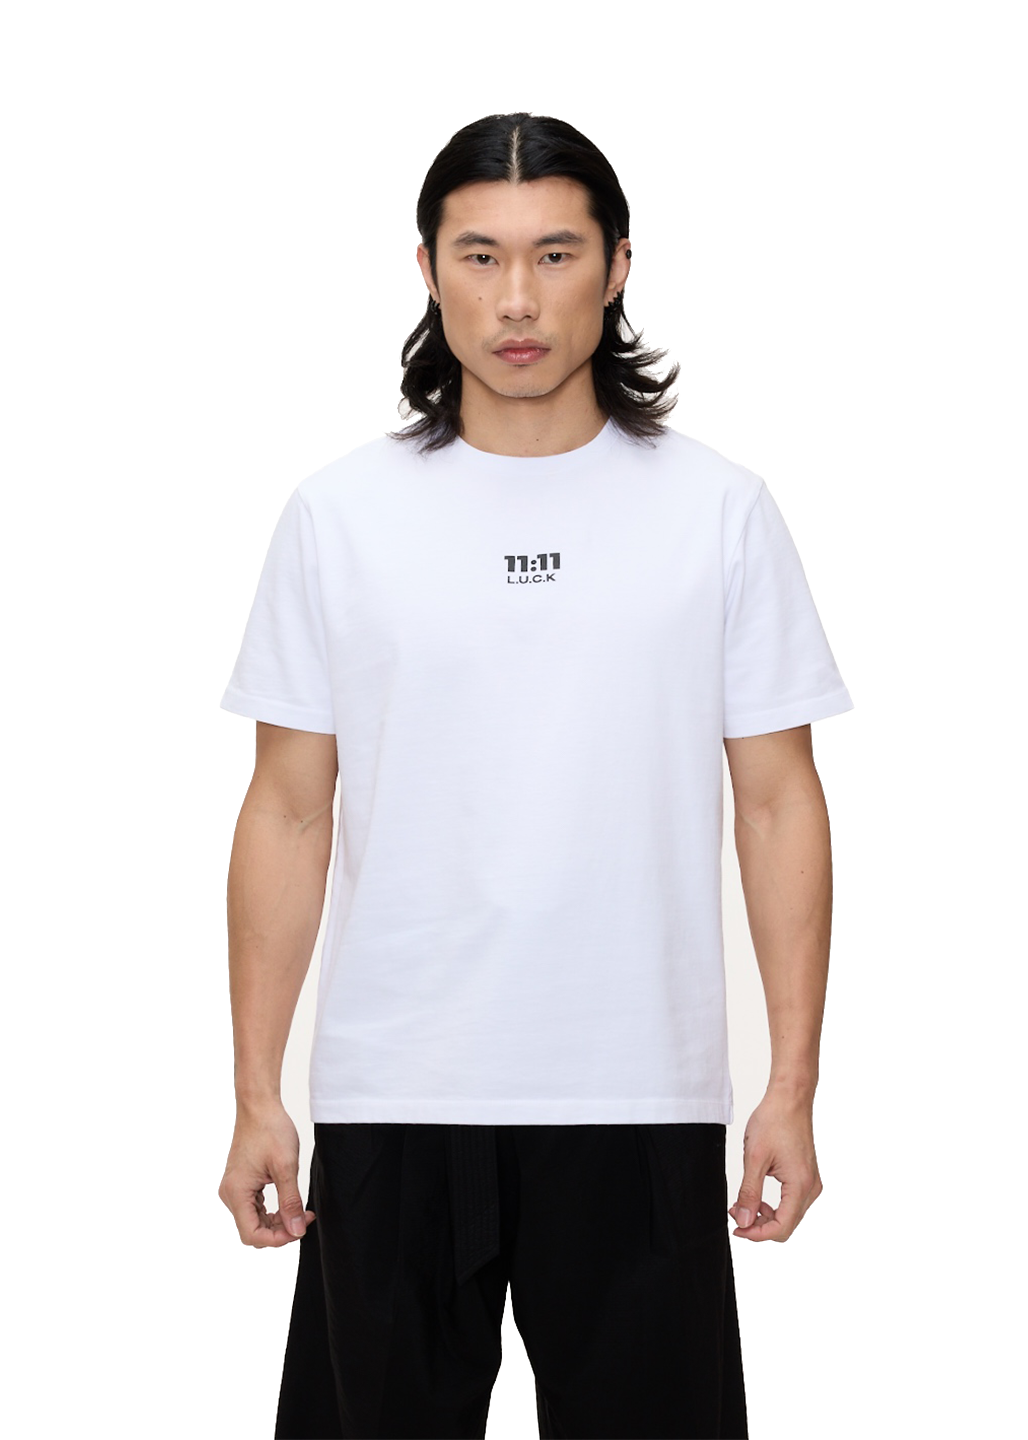 1111 luck white logo t-shirt male model